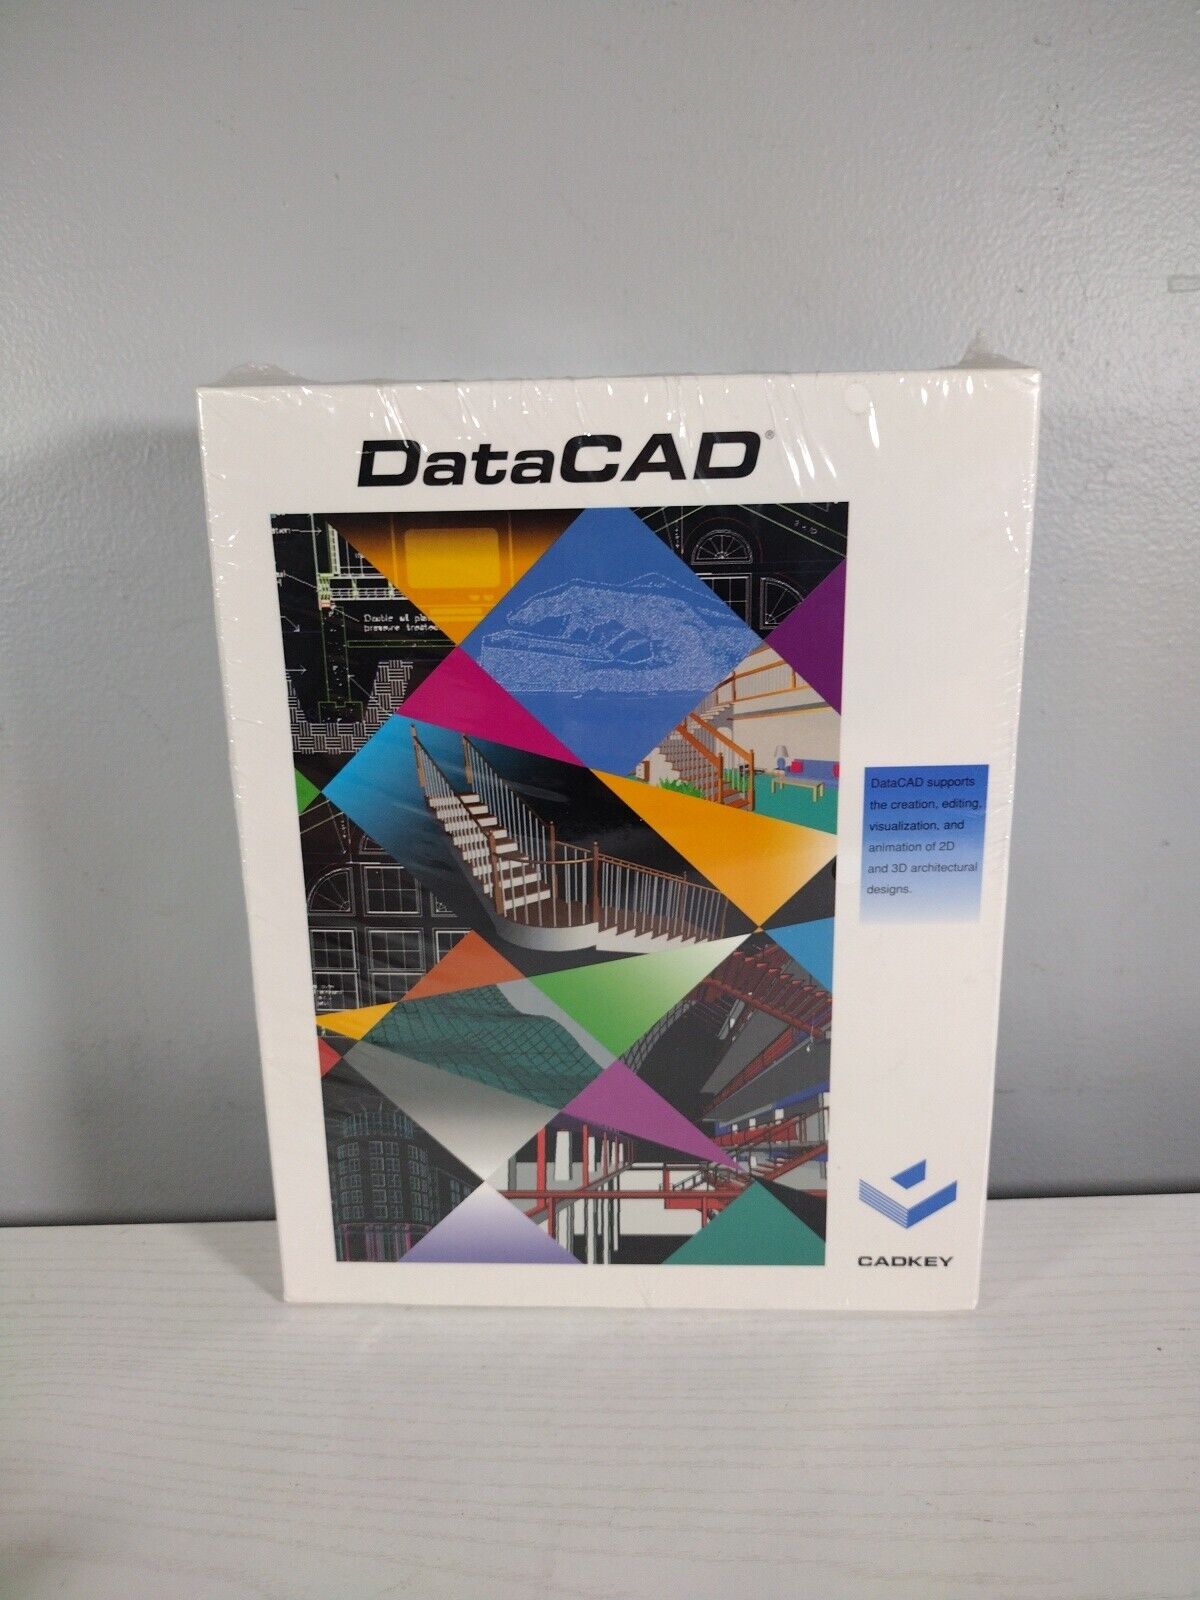 DATACAD Cadkey IBM 1994 Cad *CD* Software Complete BRAND NEW SEALED VTG